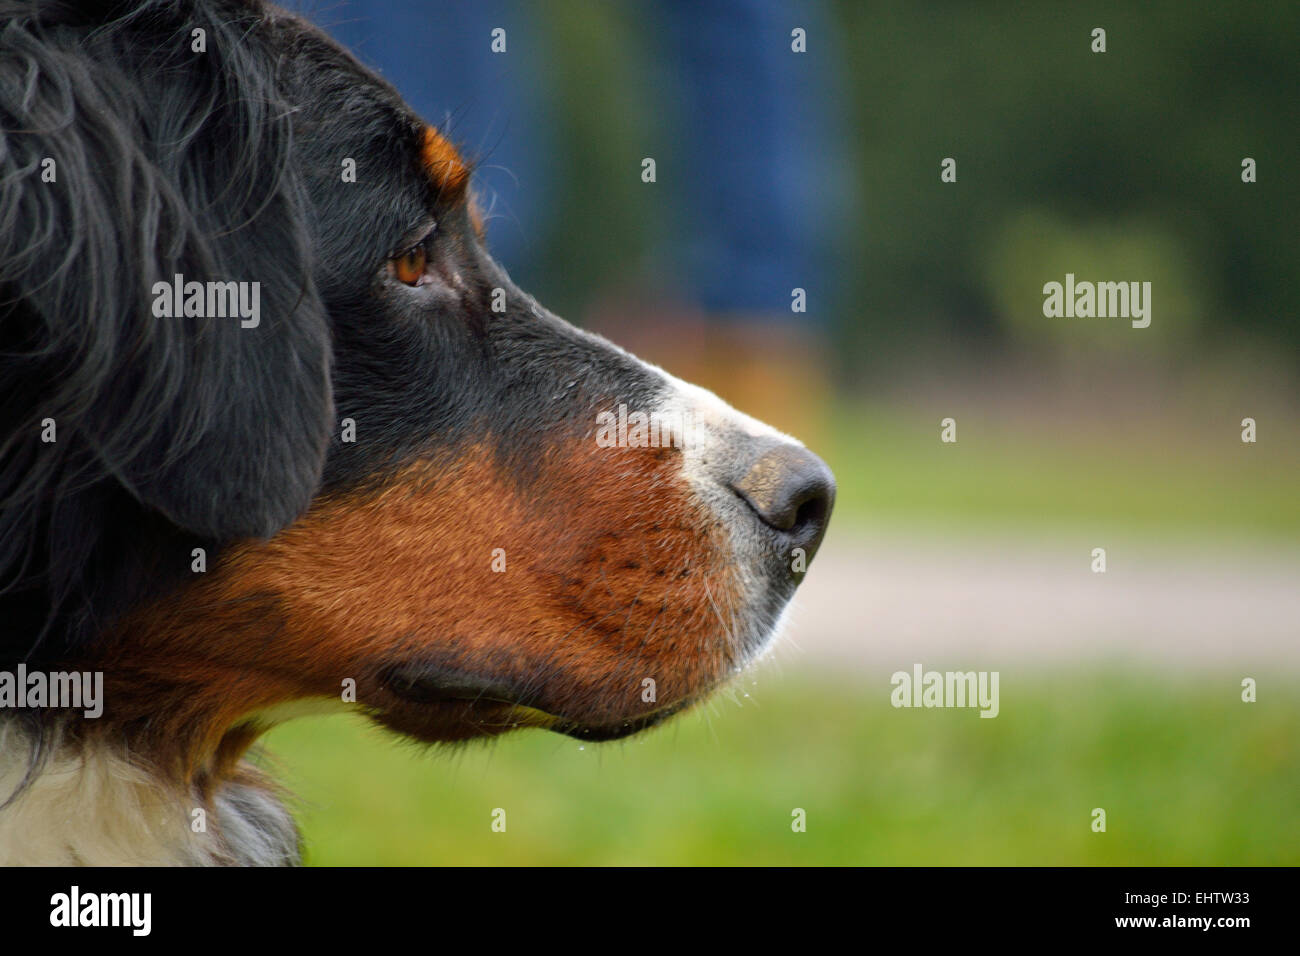 Dog Profile - Close-up Stock Photo